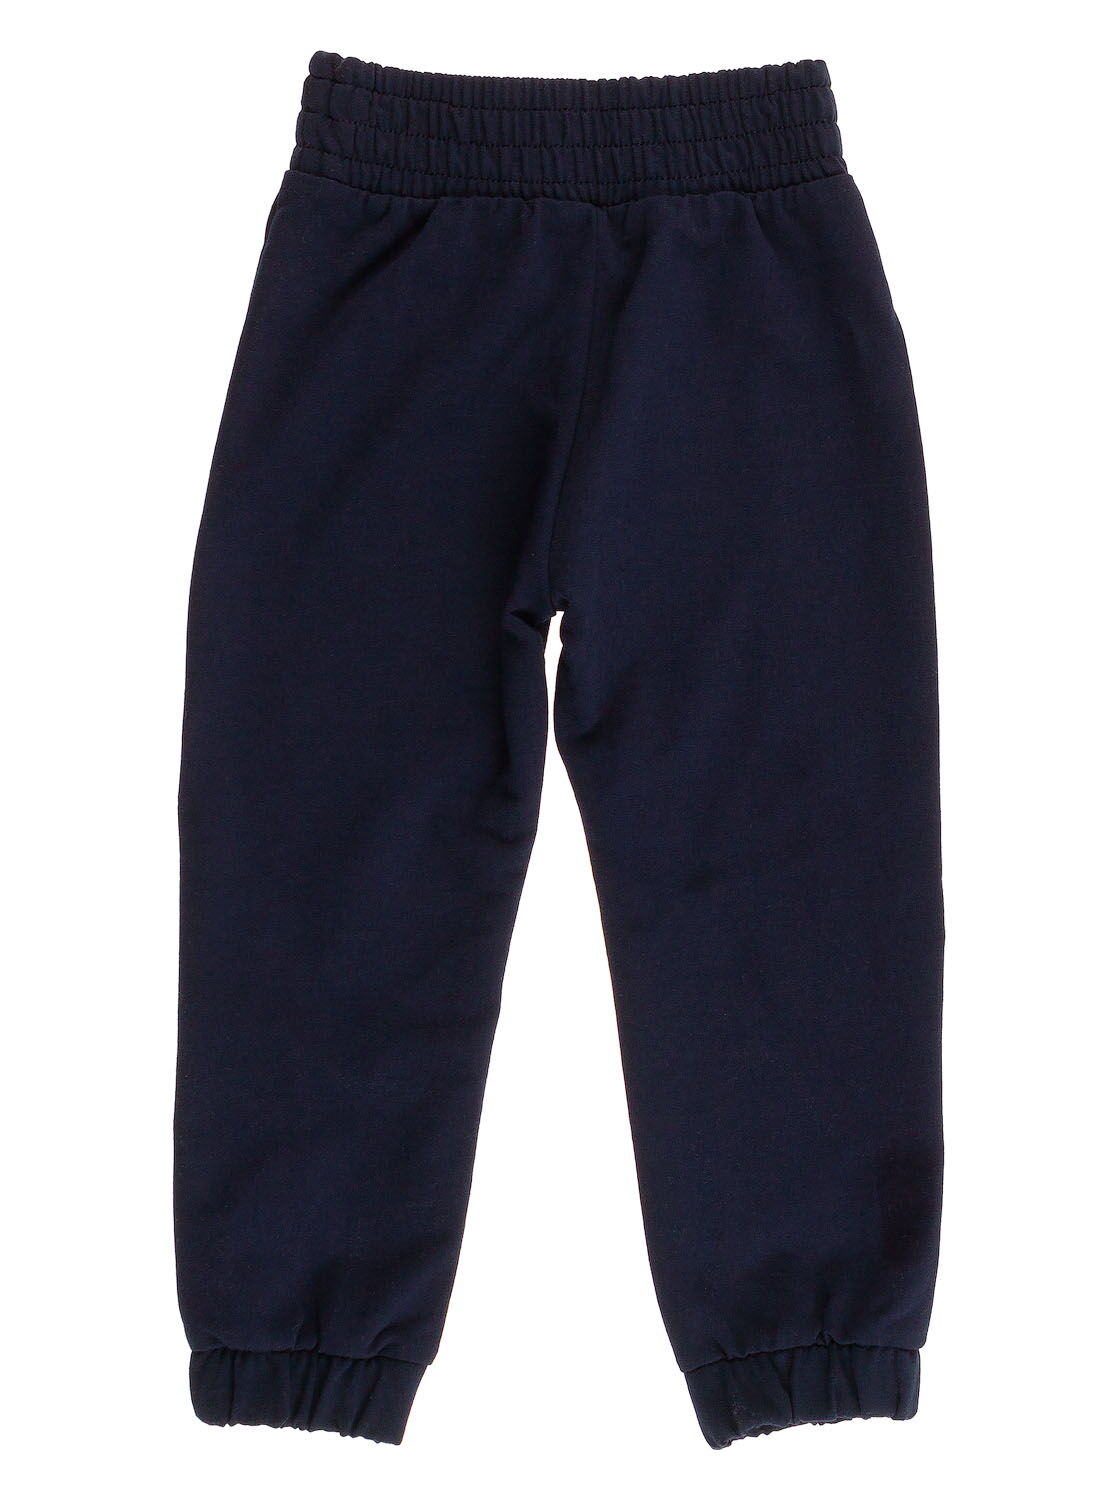 Спортивные штаны для мальчика Robinzone темно-синие ШТ-133 - фото